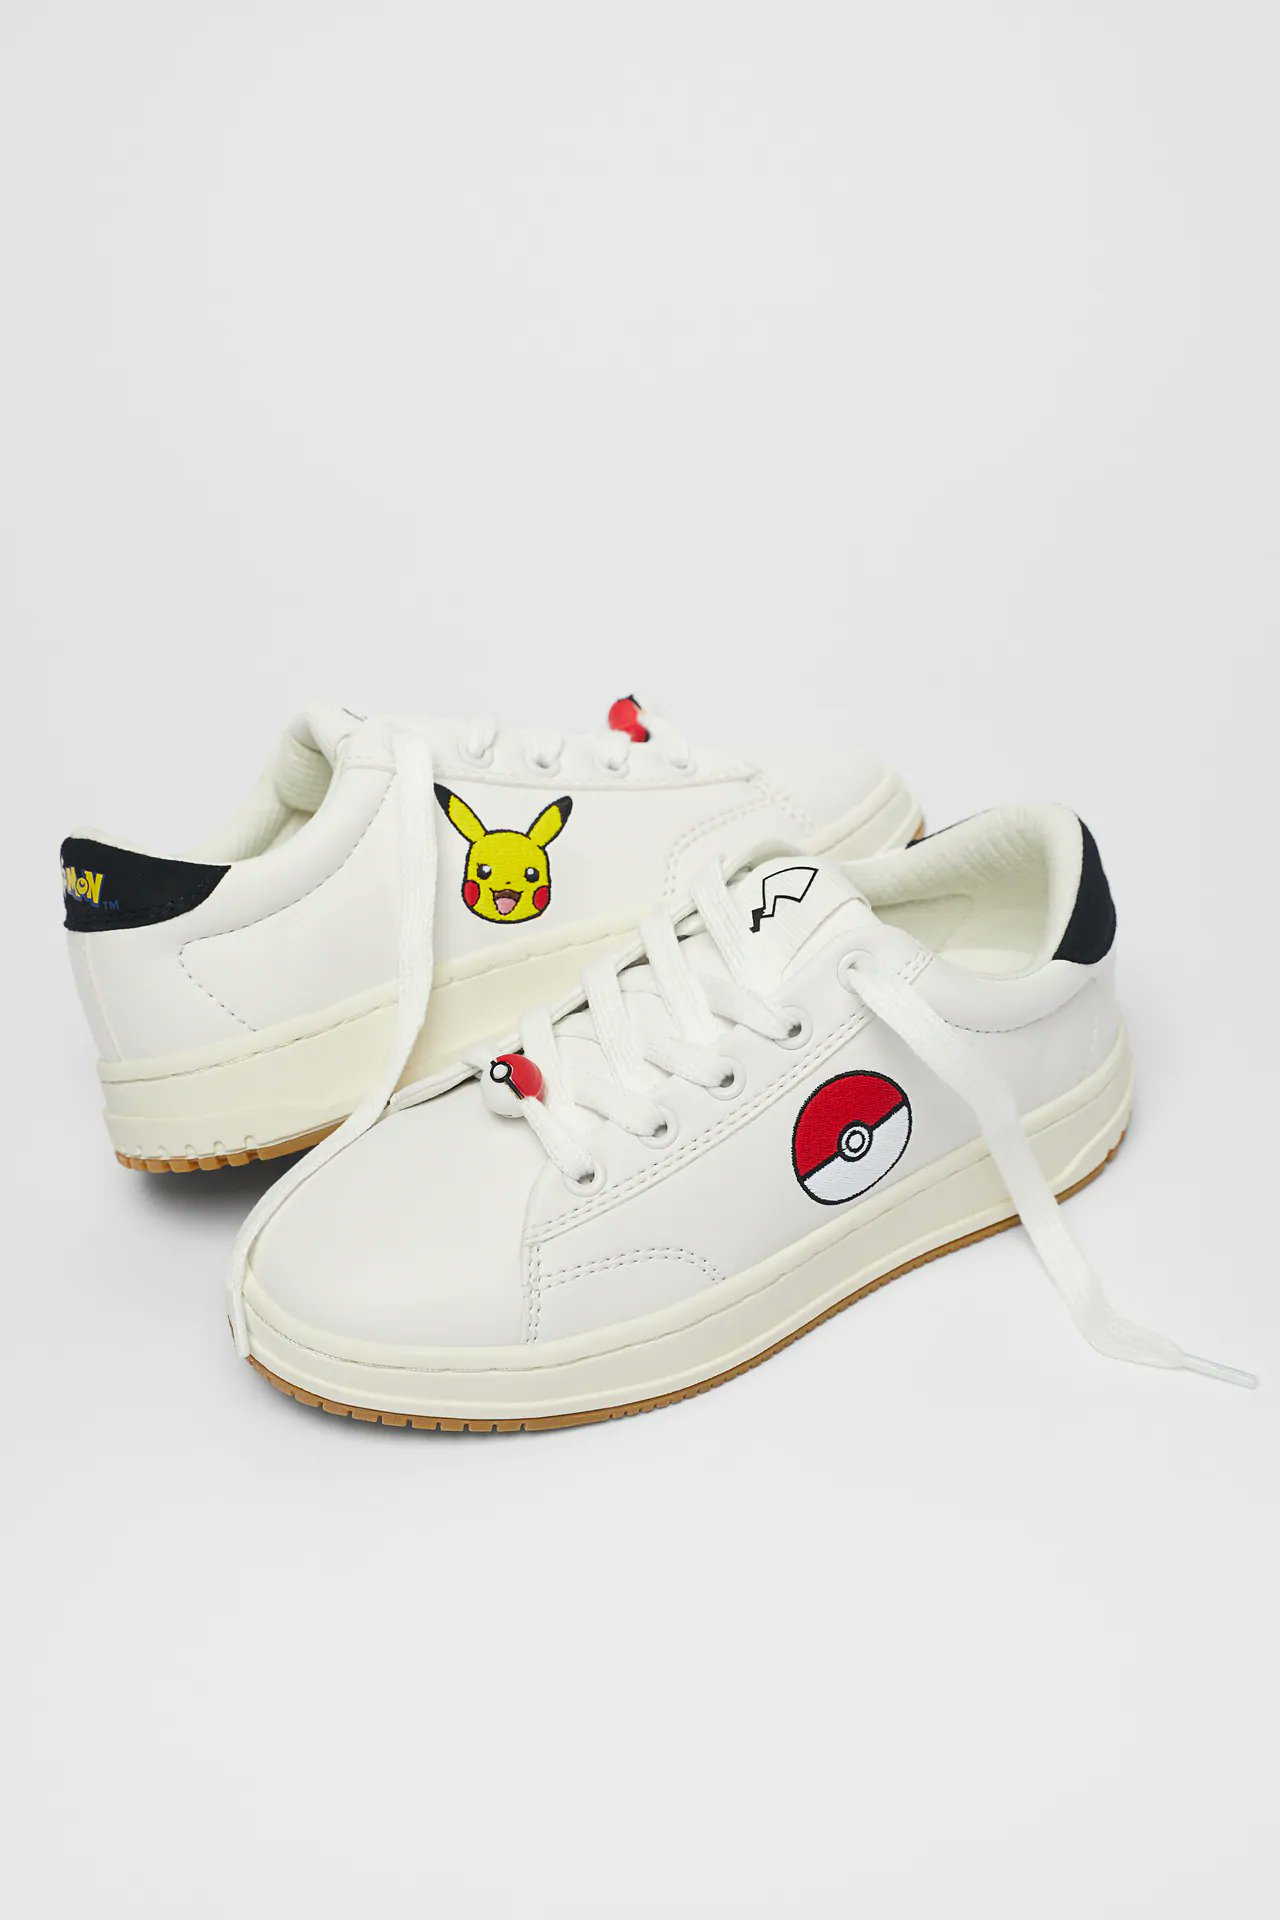 Merchandise Pokémon: zapatillas en colaboración prototipo de la figura de Garchomp de Kotobukiya y figuras de Kids - Nintenderos